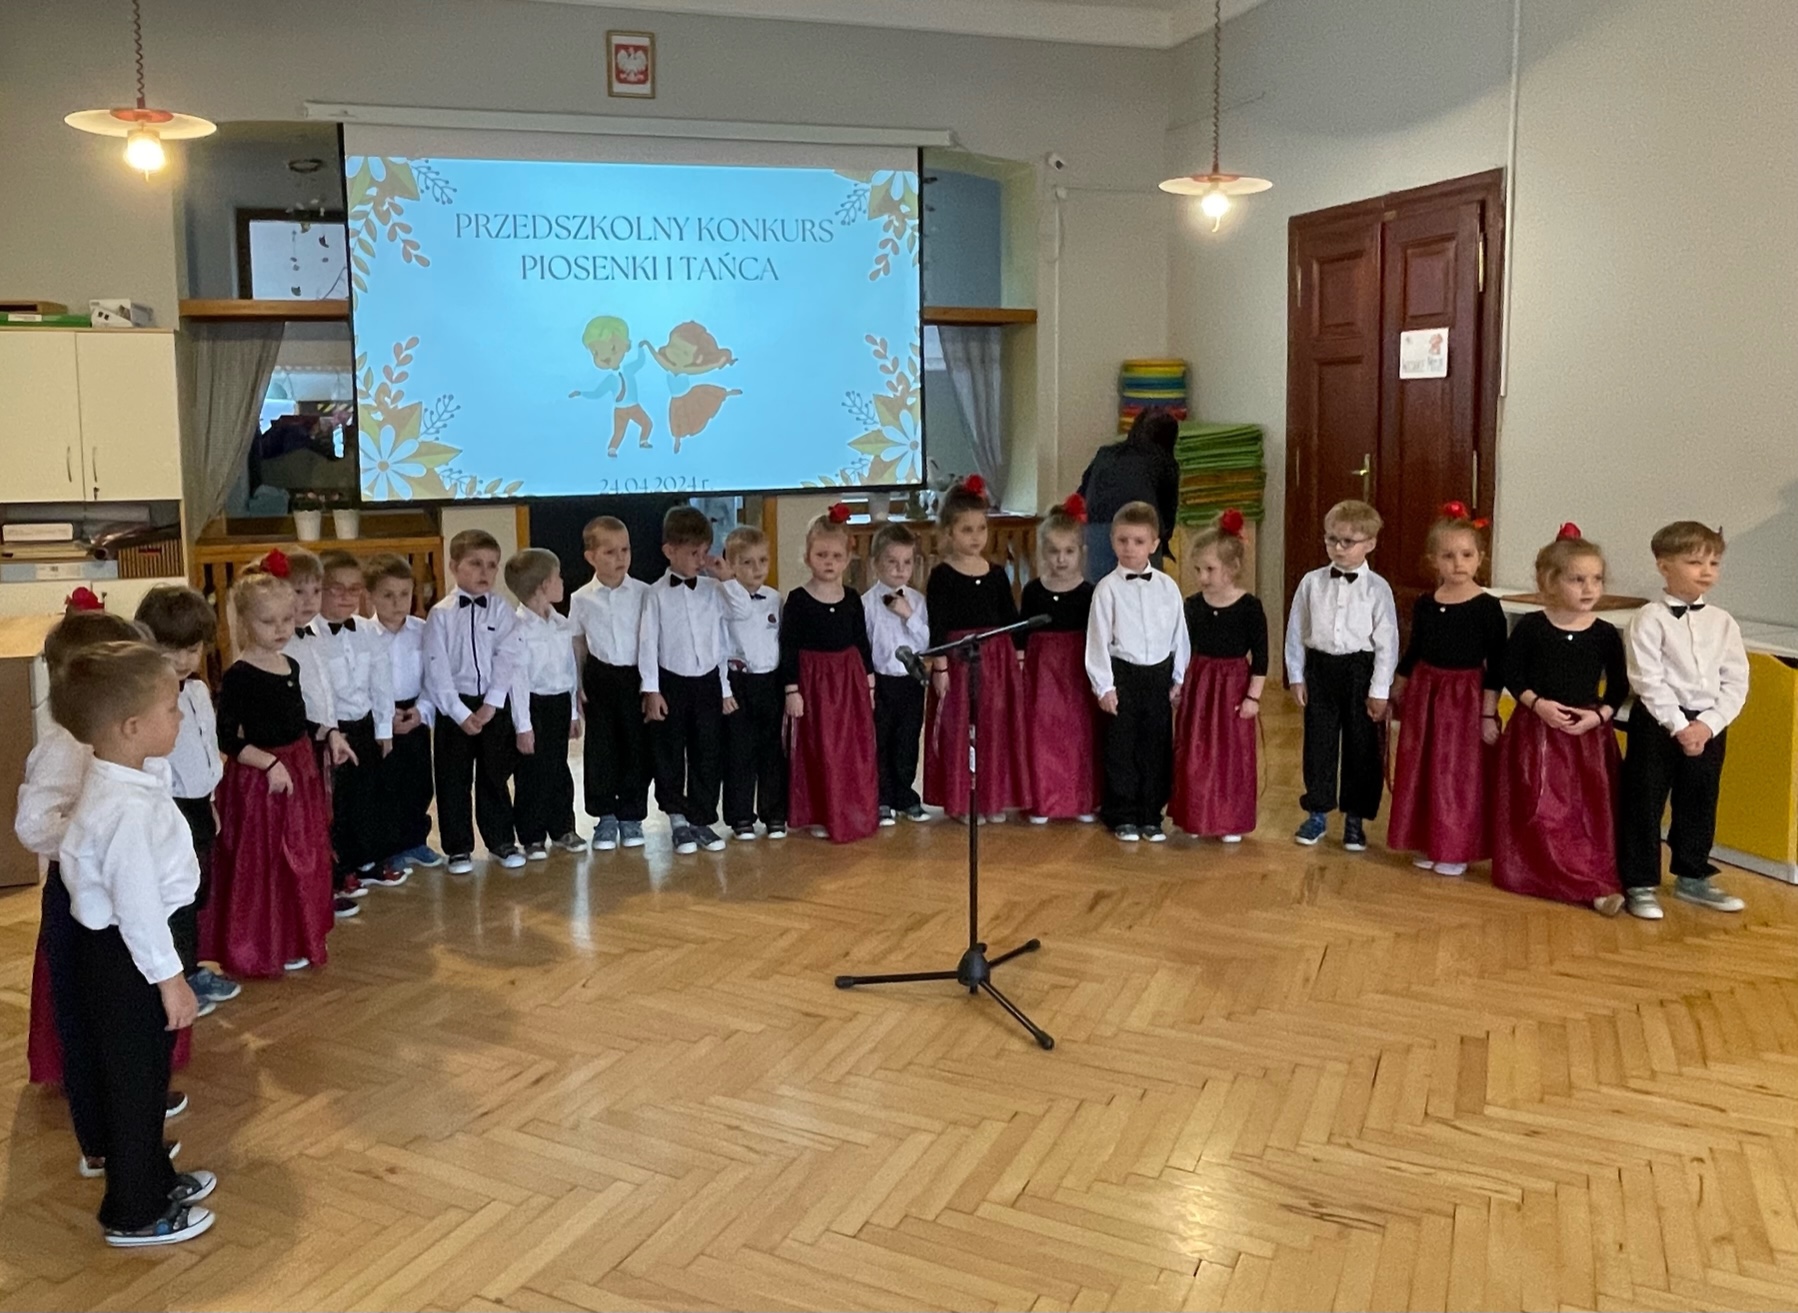 Przedszkolny Konkurs Piosenki i Tańca „Potrafię śpiewać i tańczyć” post thumbnail